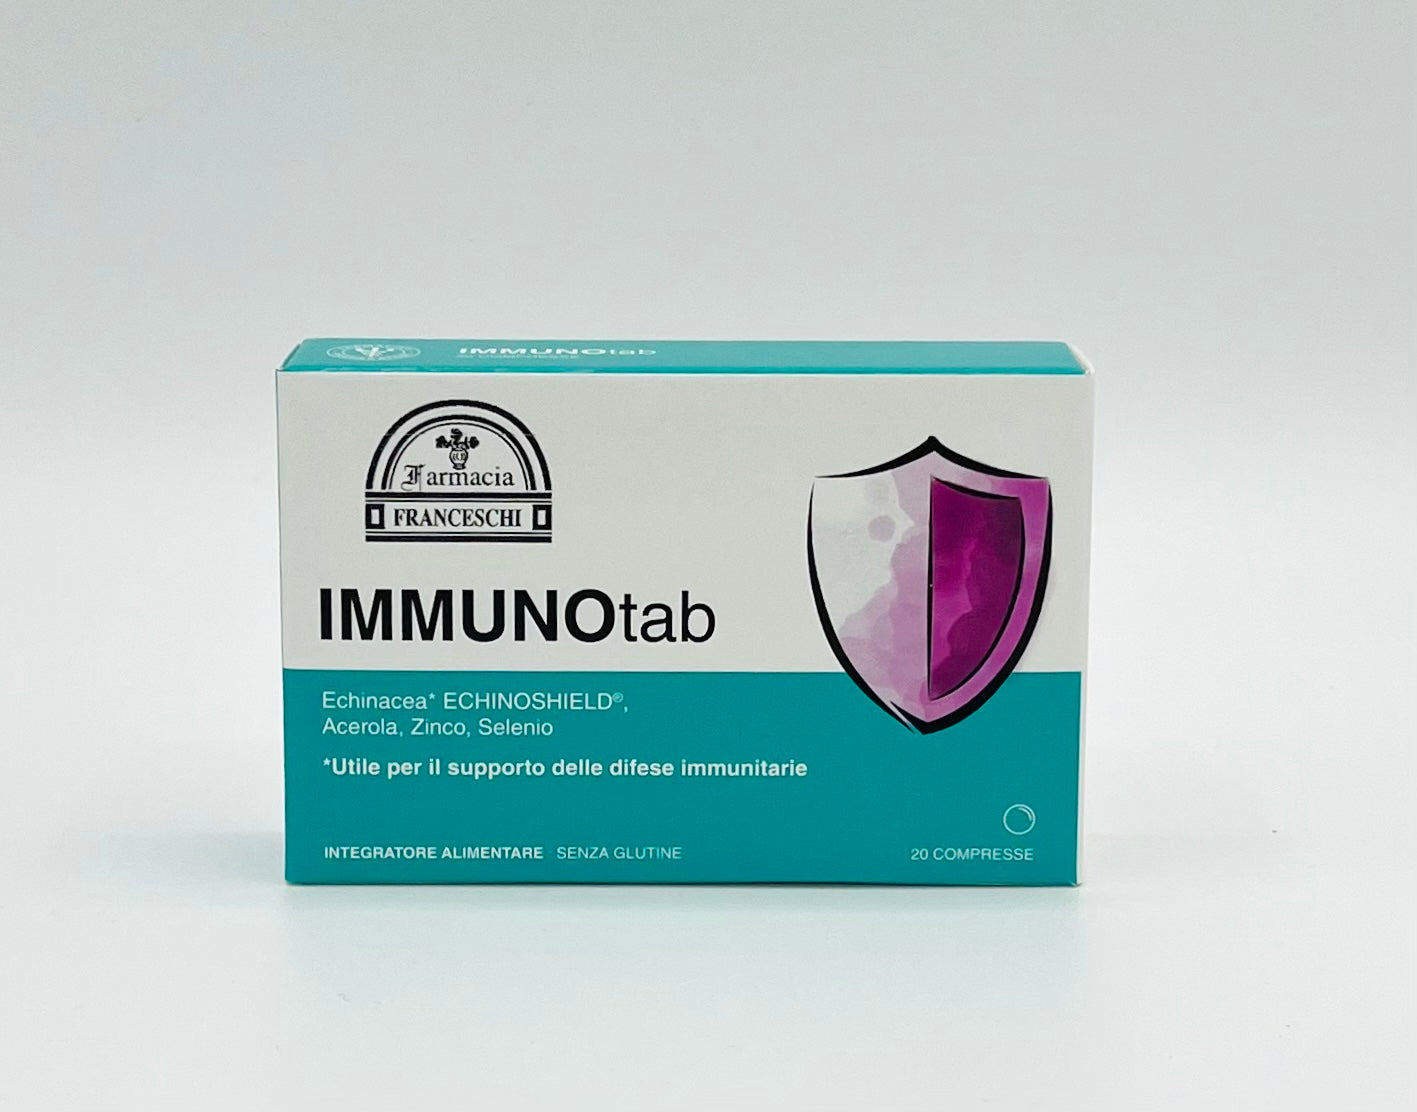 Immunotab